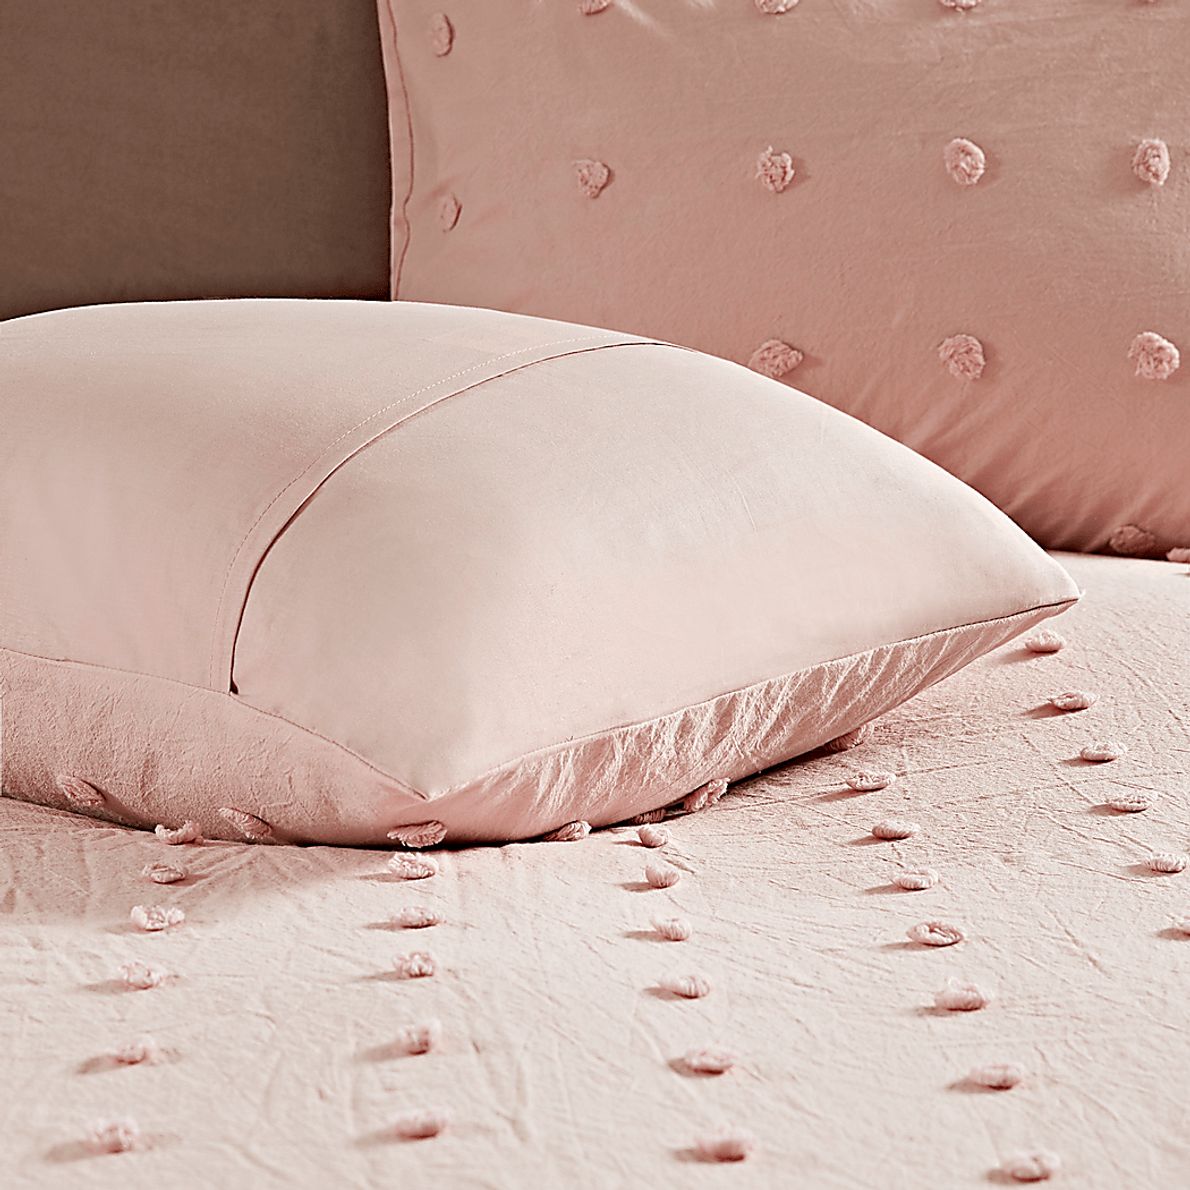 Kids Pastelle Pink 7 Pc Full/Queen Comforter Set